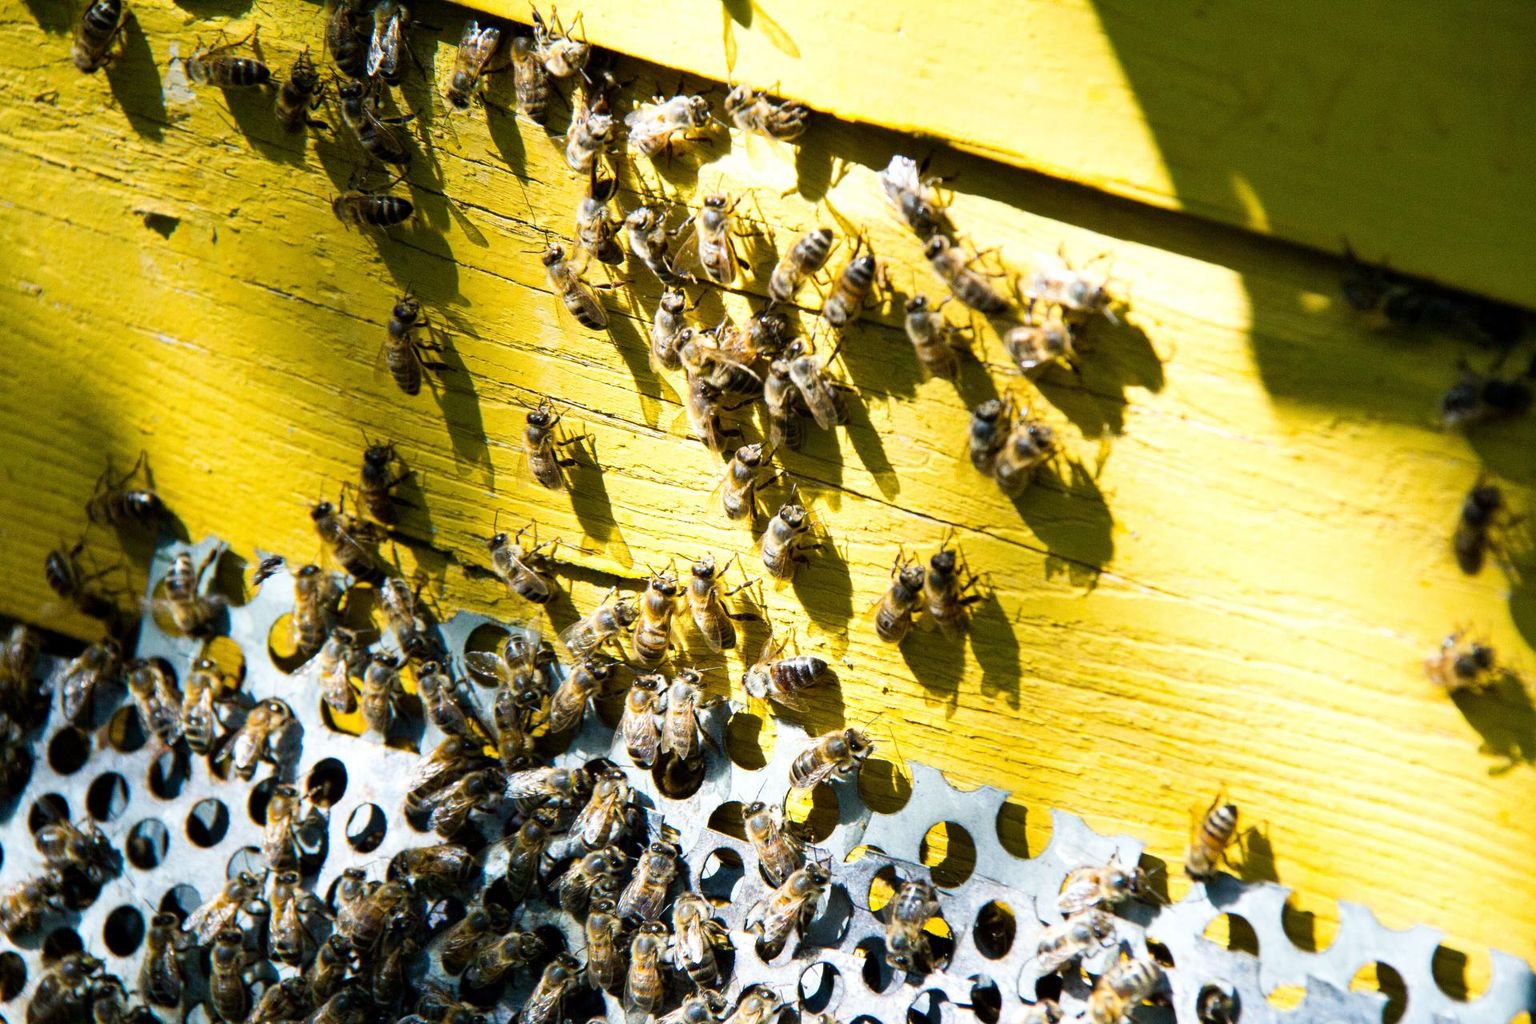 Loodus on pannud õitsvad taimed ja tolmeldajad üksteisest sõltuma. Ka taimekasvatajad ja mesinikud saavad parimaid tulemusi loota ainult sümbioosisarnase koostöötaseme korral.